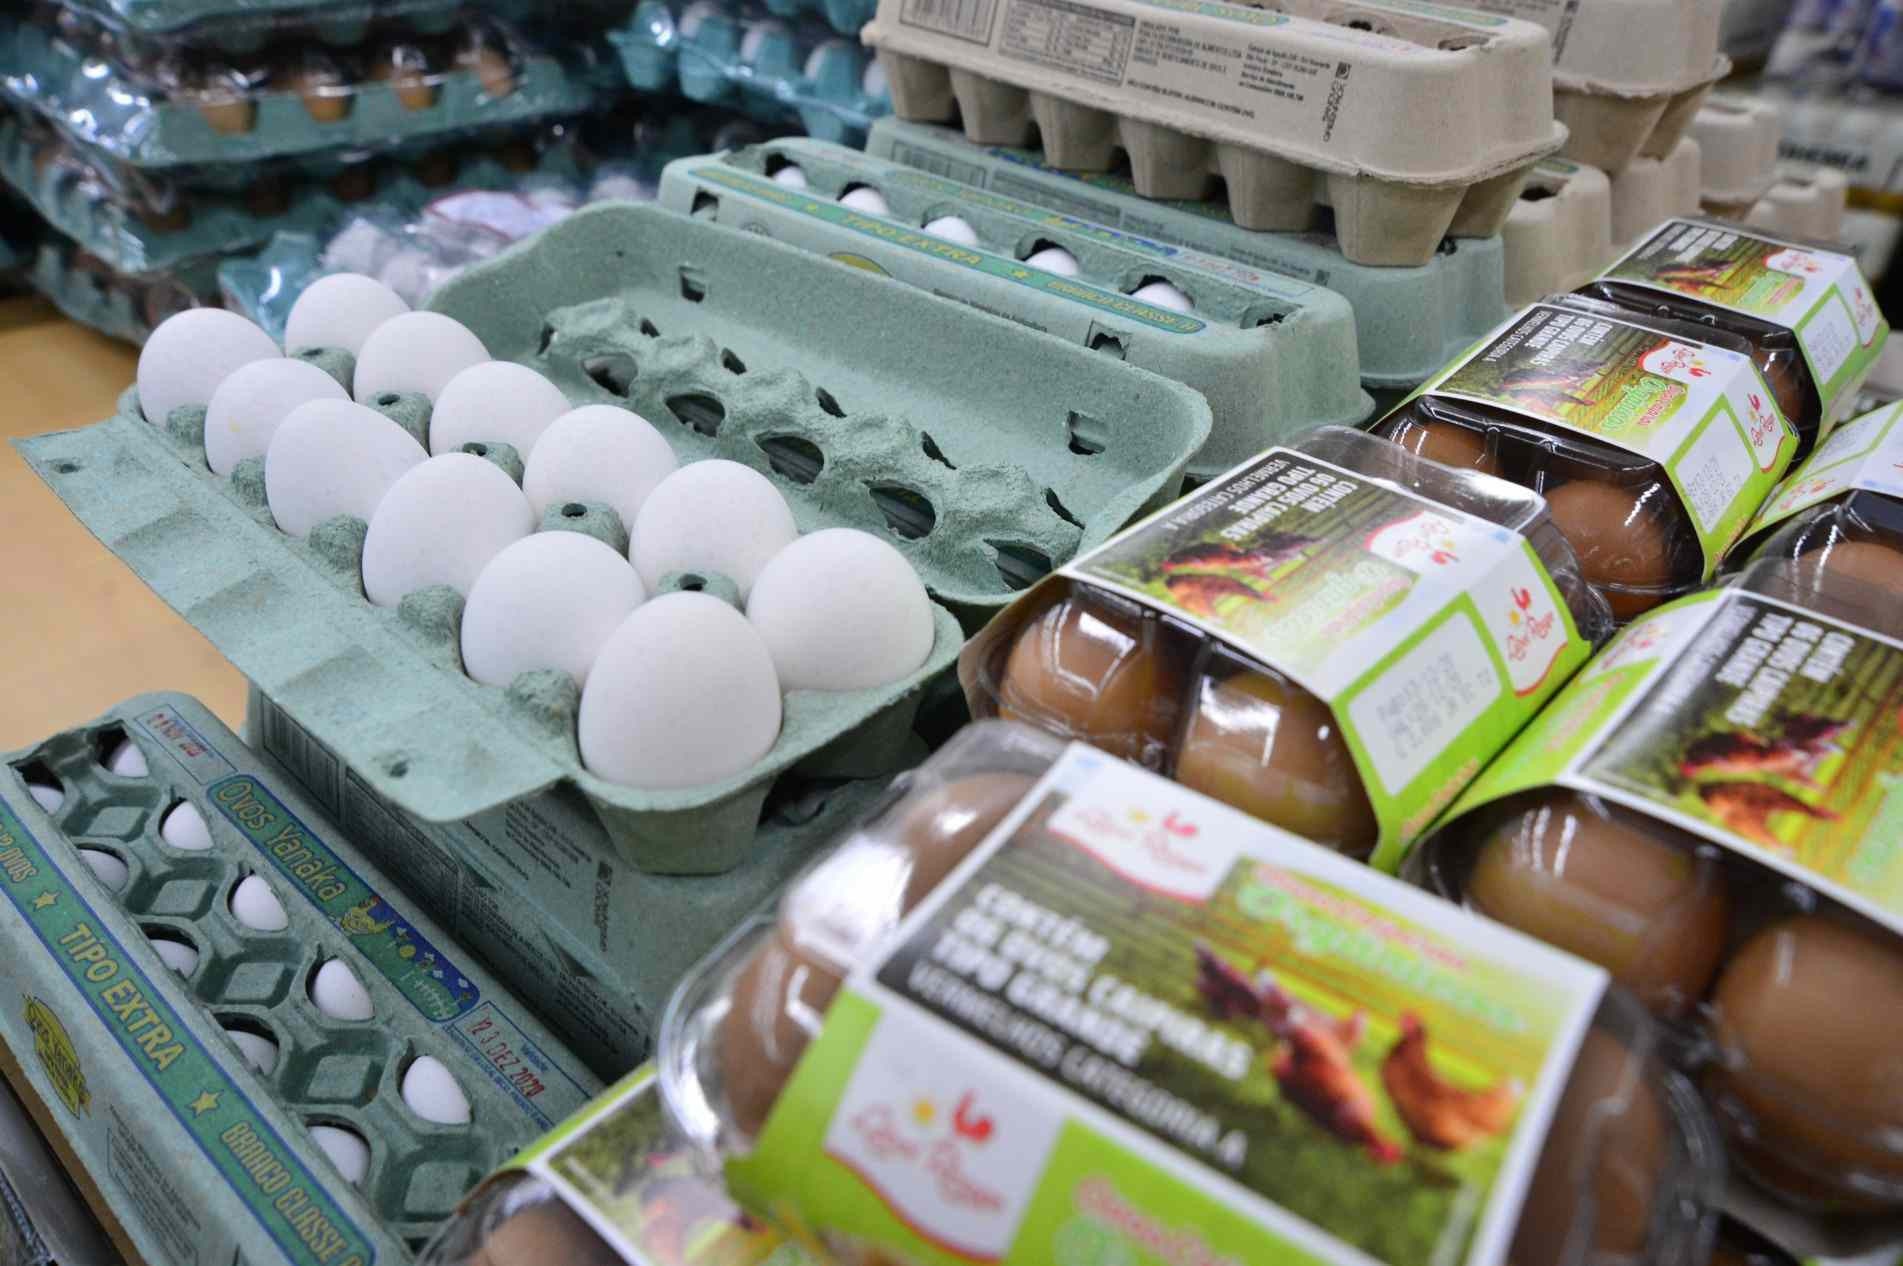 Perda de renda levou a uma maior demanda por ovos.